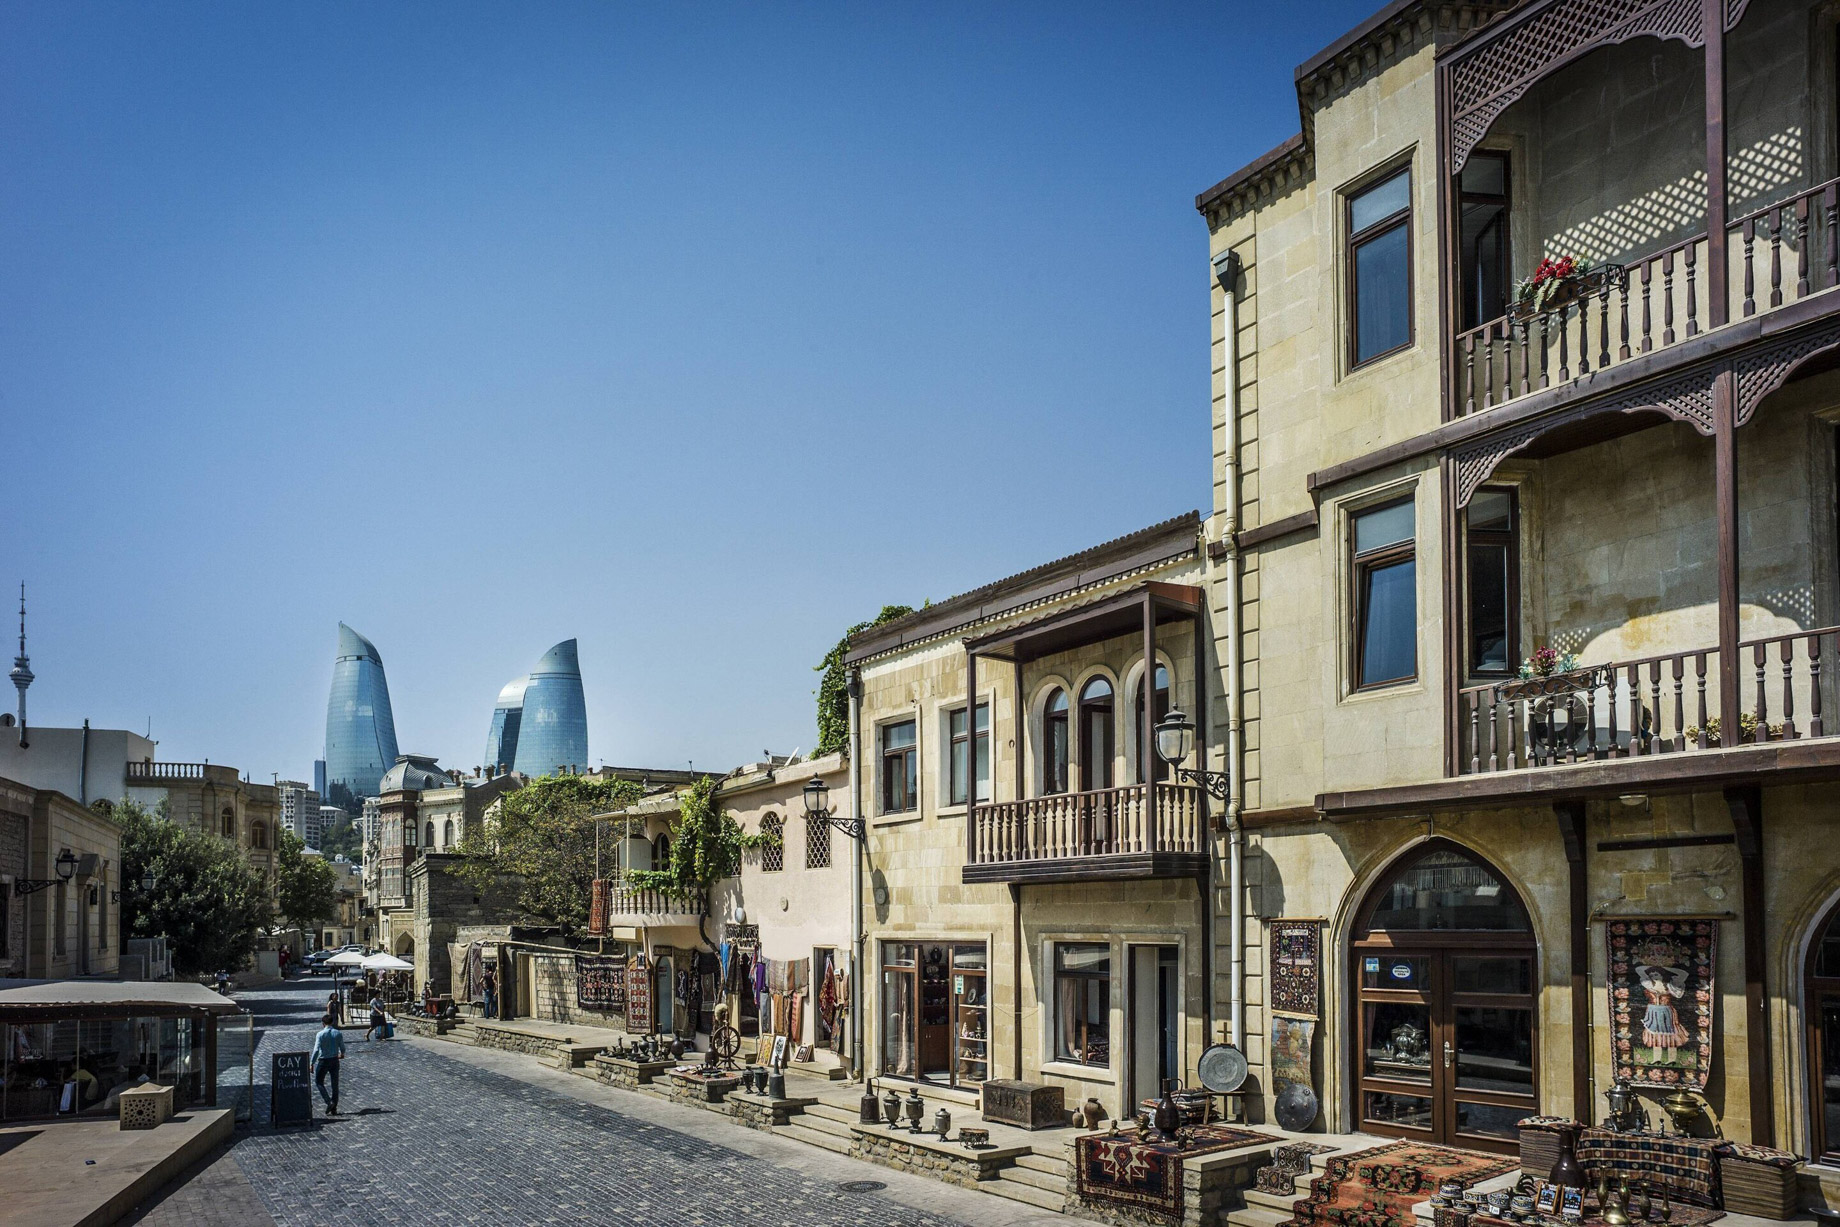 JW Marriott Absheron Baku Hotel - Baku, Azerbaijan - Baku Old City